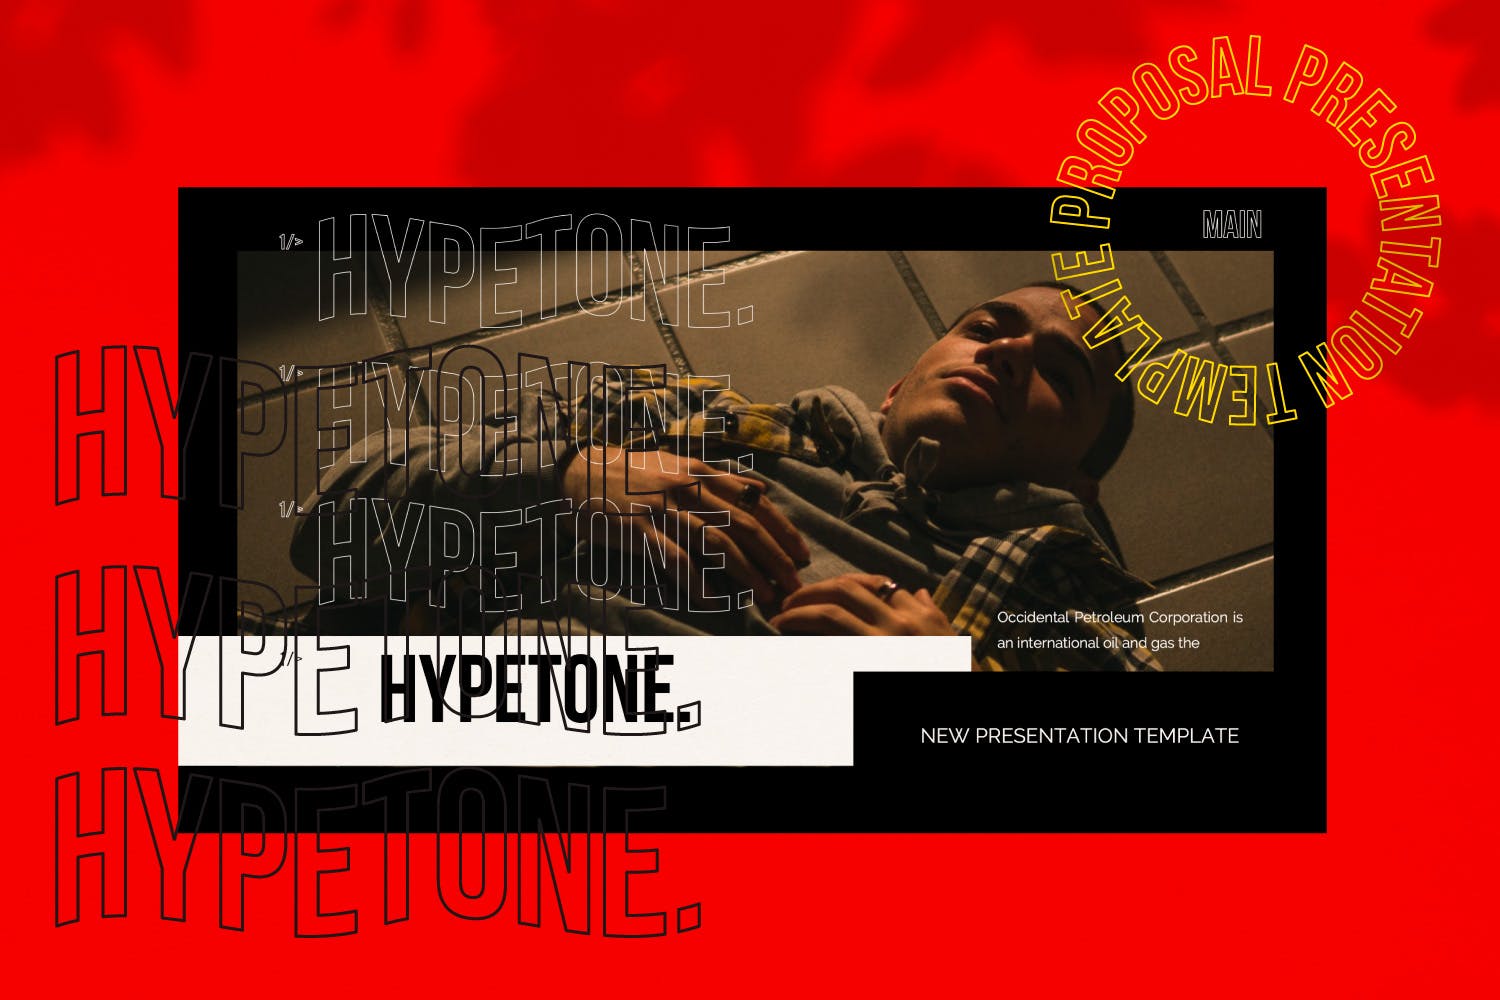 潮流服饰品牌介绍谷歌幻灯片模板 Hypetone – Google Slide插图(1)